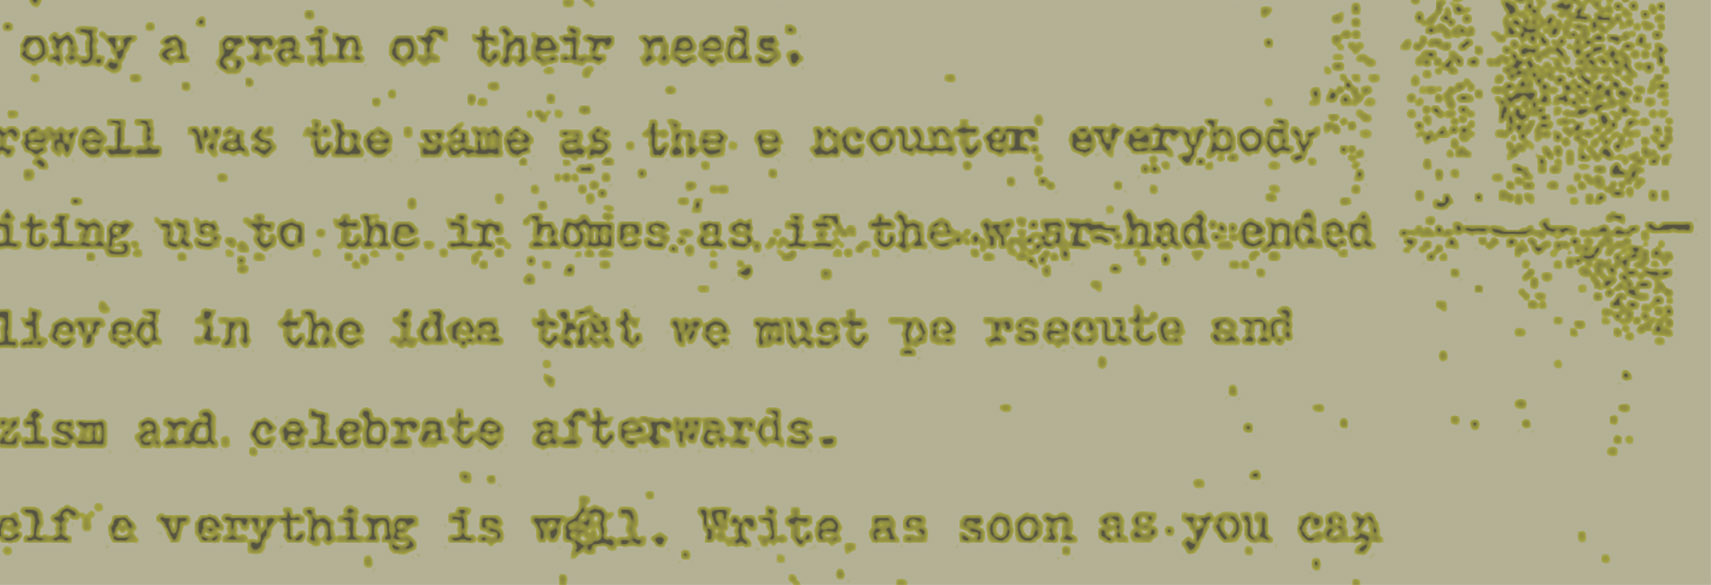 Screenshot of vintage old typed letter